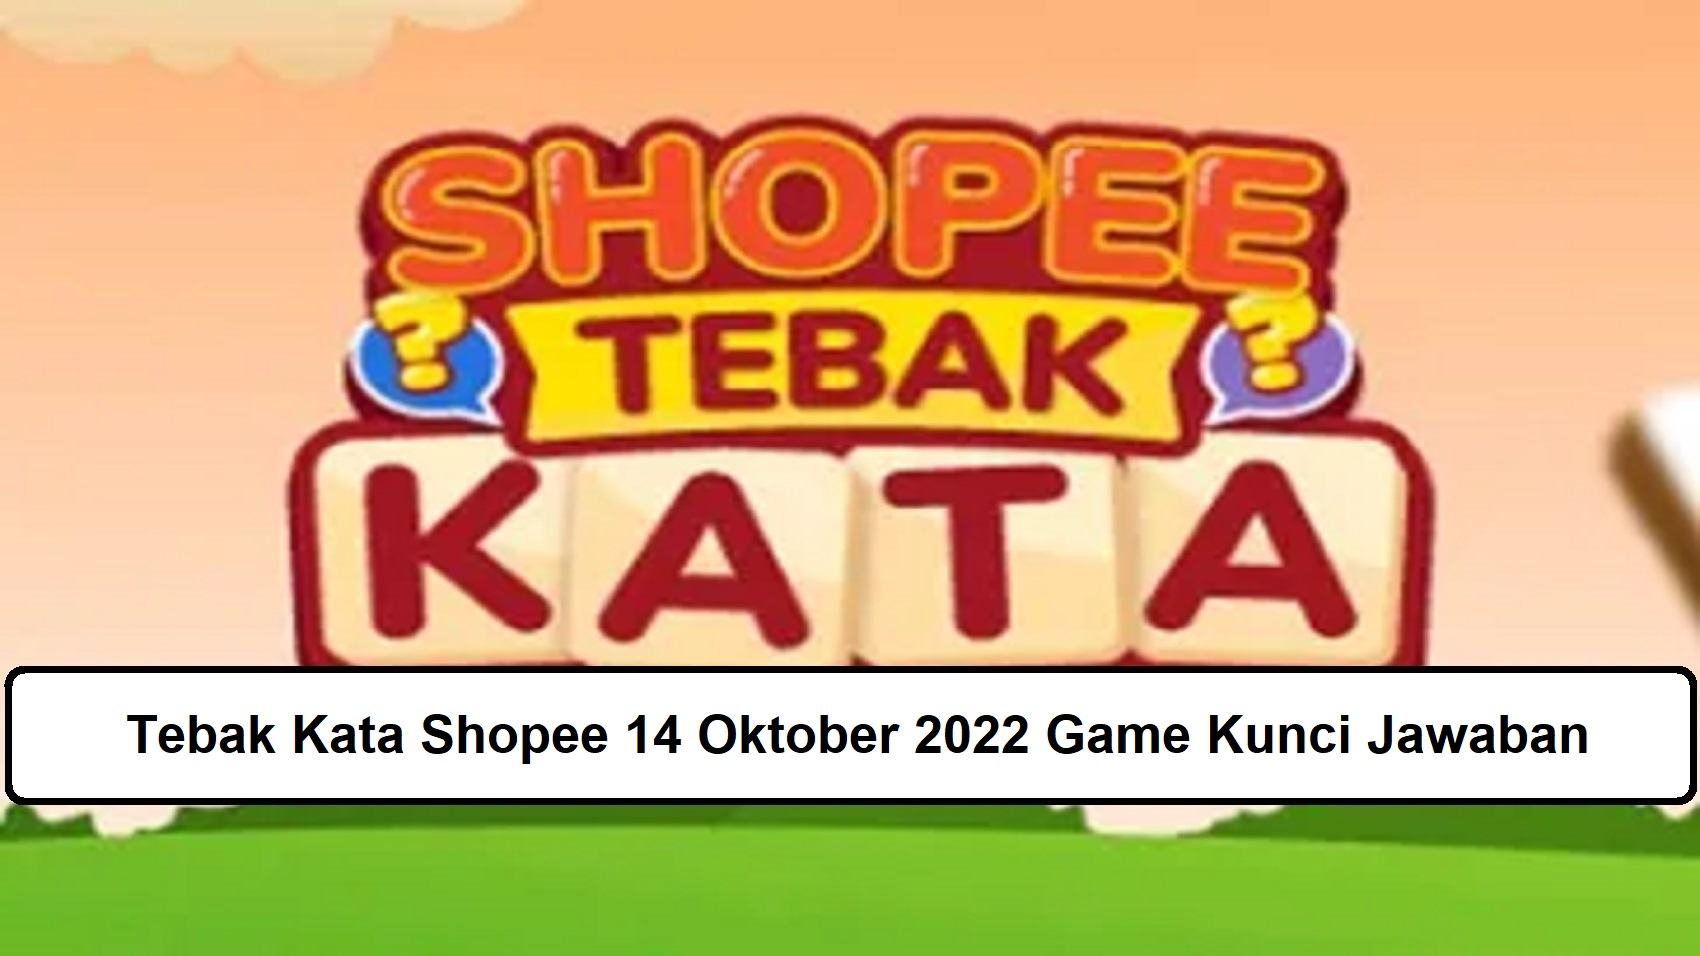 Tebak Kata Shopee 14 Oktober 2022 Game Kunci Jawaban